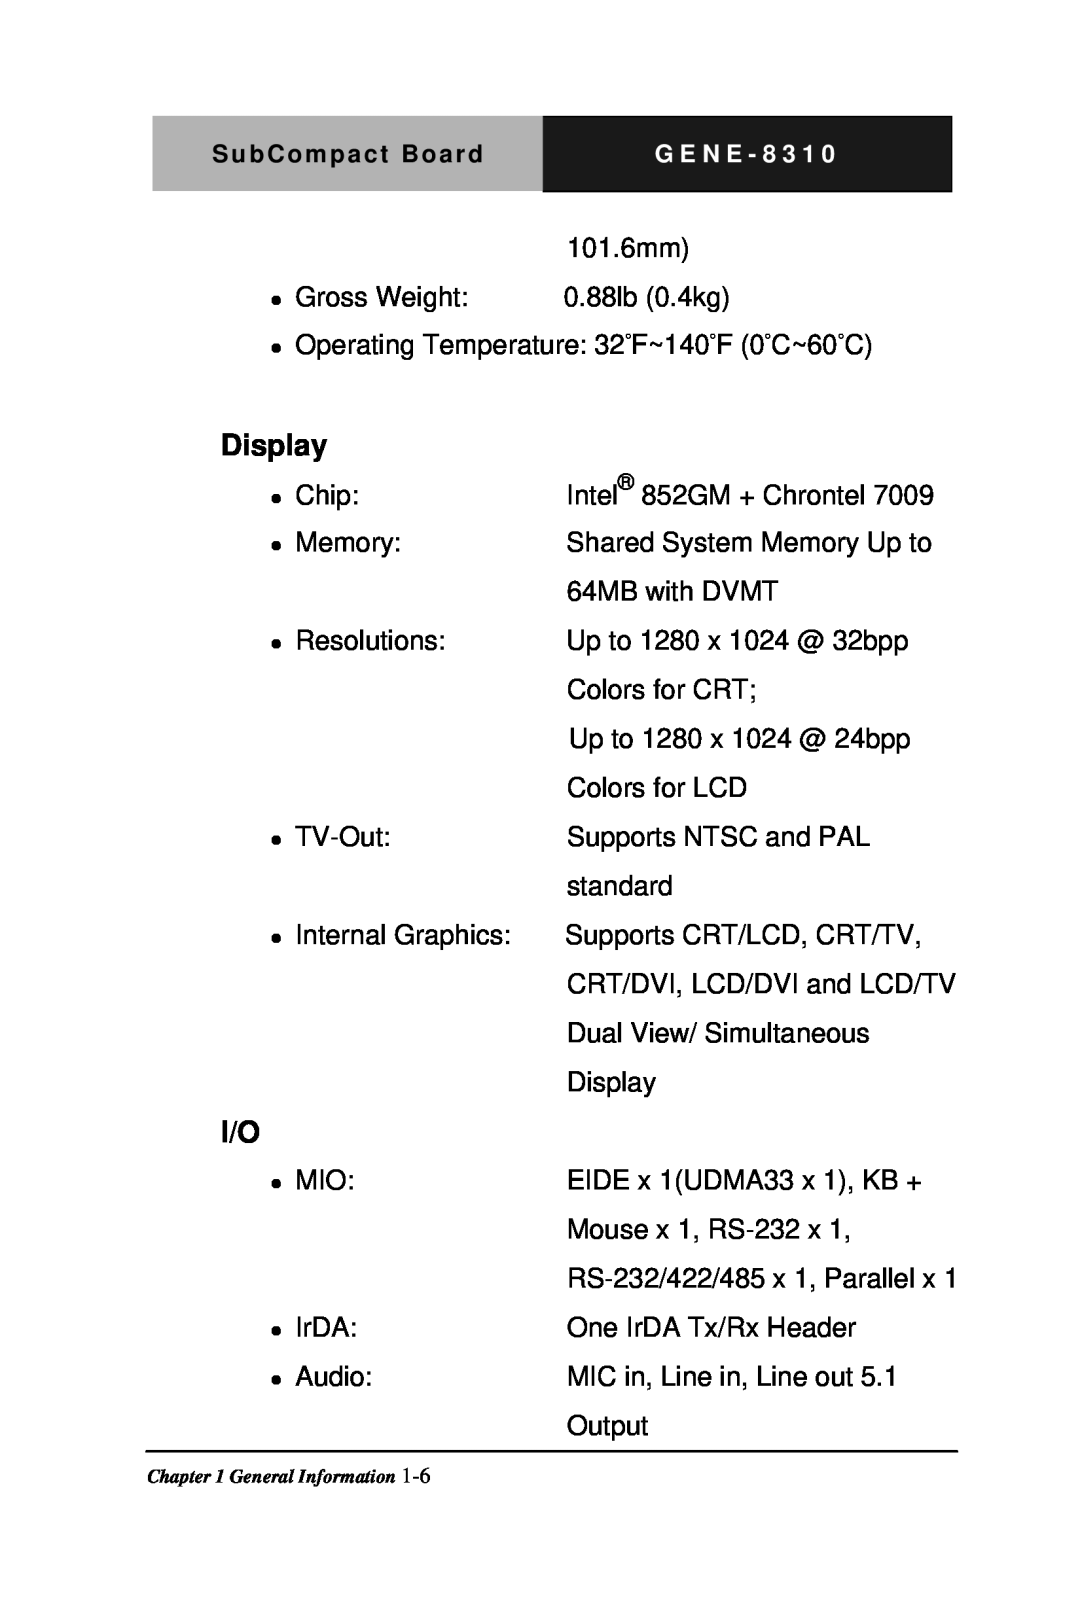 Intel GENE-8310 manual Display 